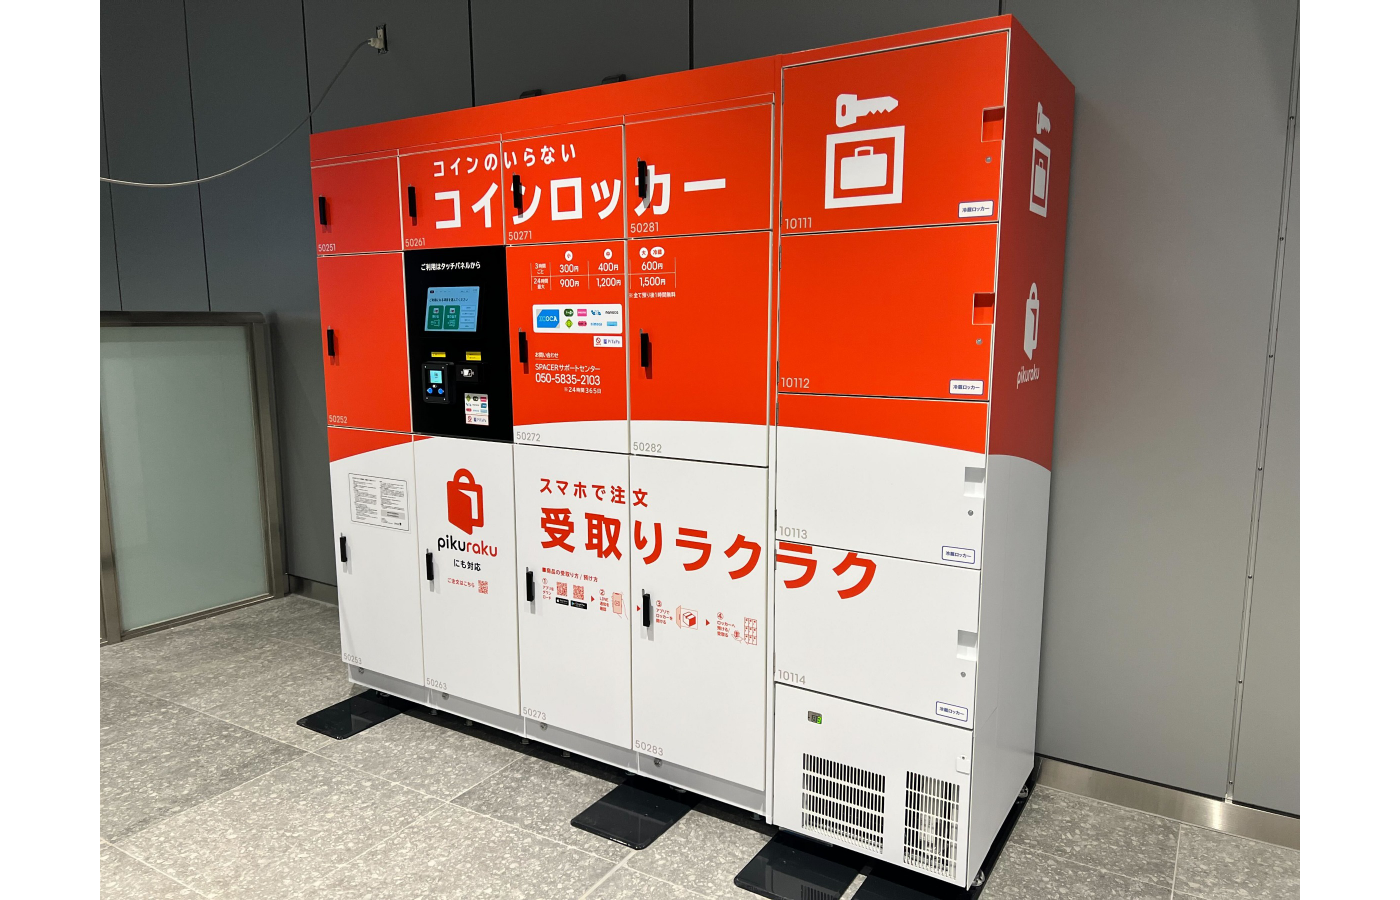 西日本旅客鉄道とSPACER、大阪駅などでスマートロッカーを活用した商品受取サービス「pikuraku」の実証実験を実施